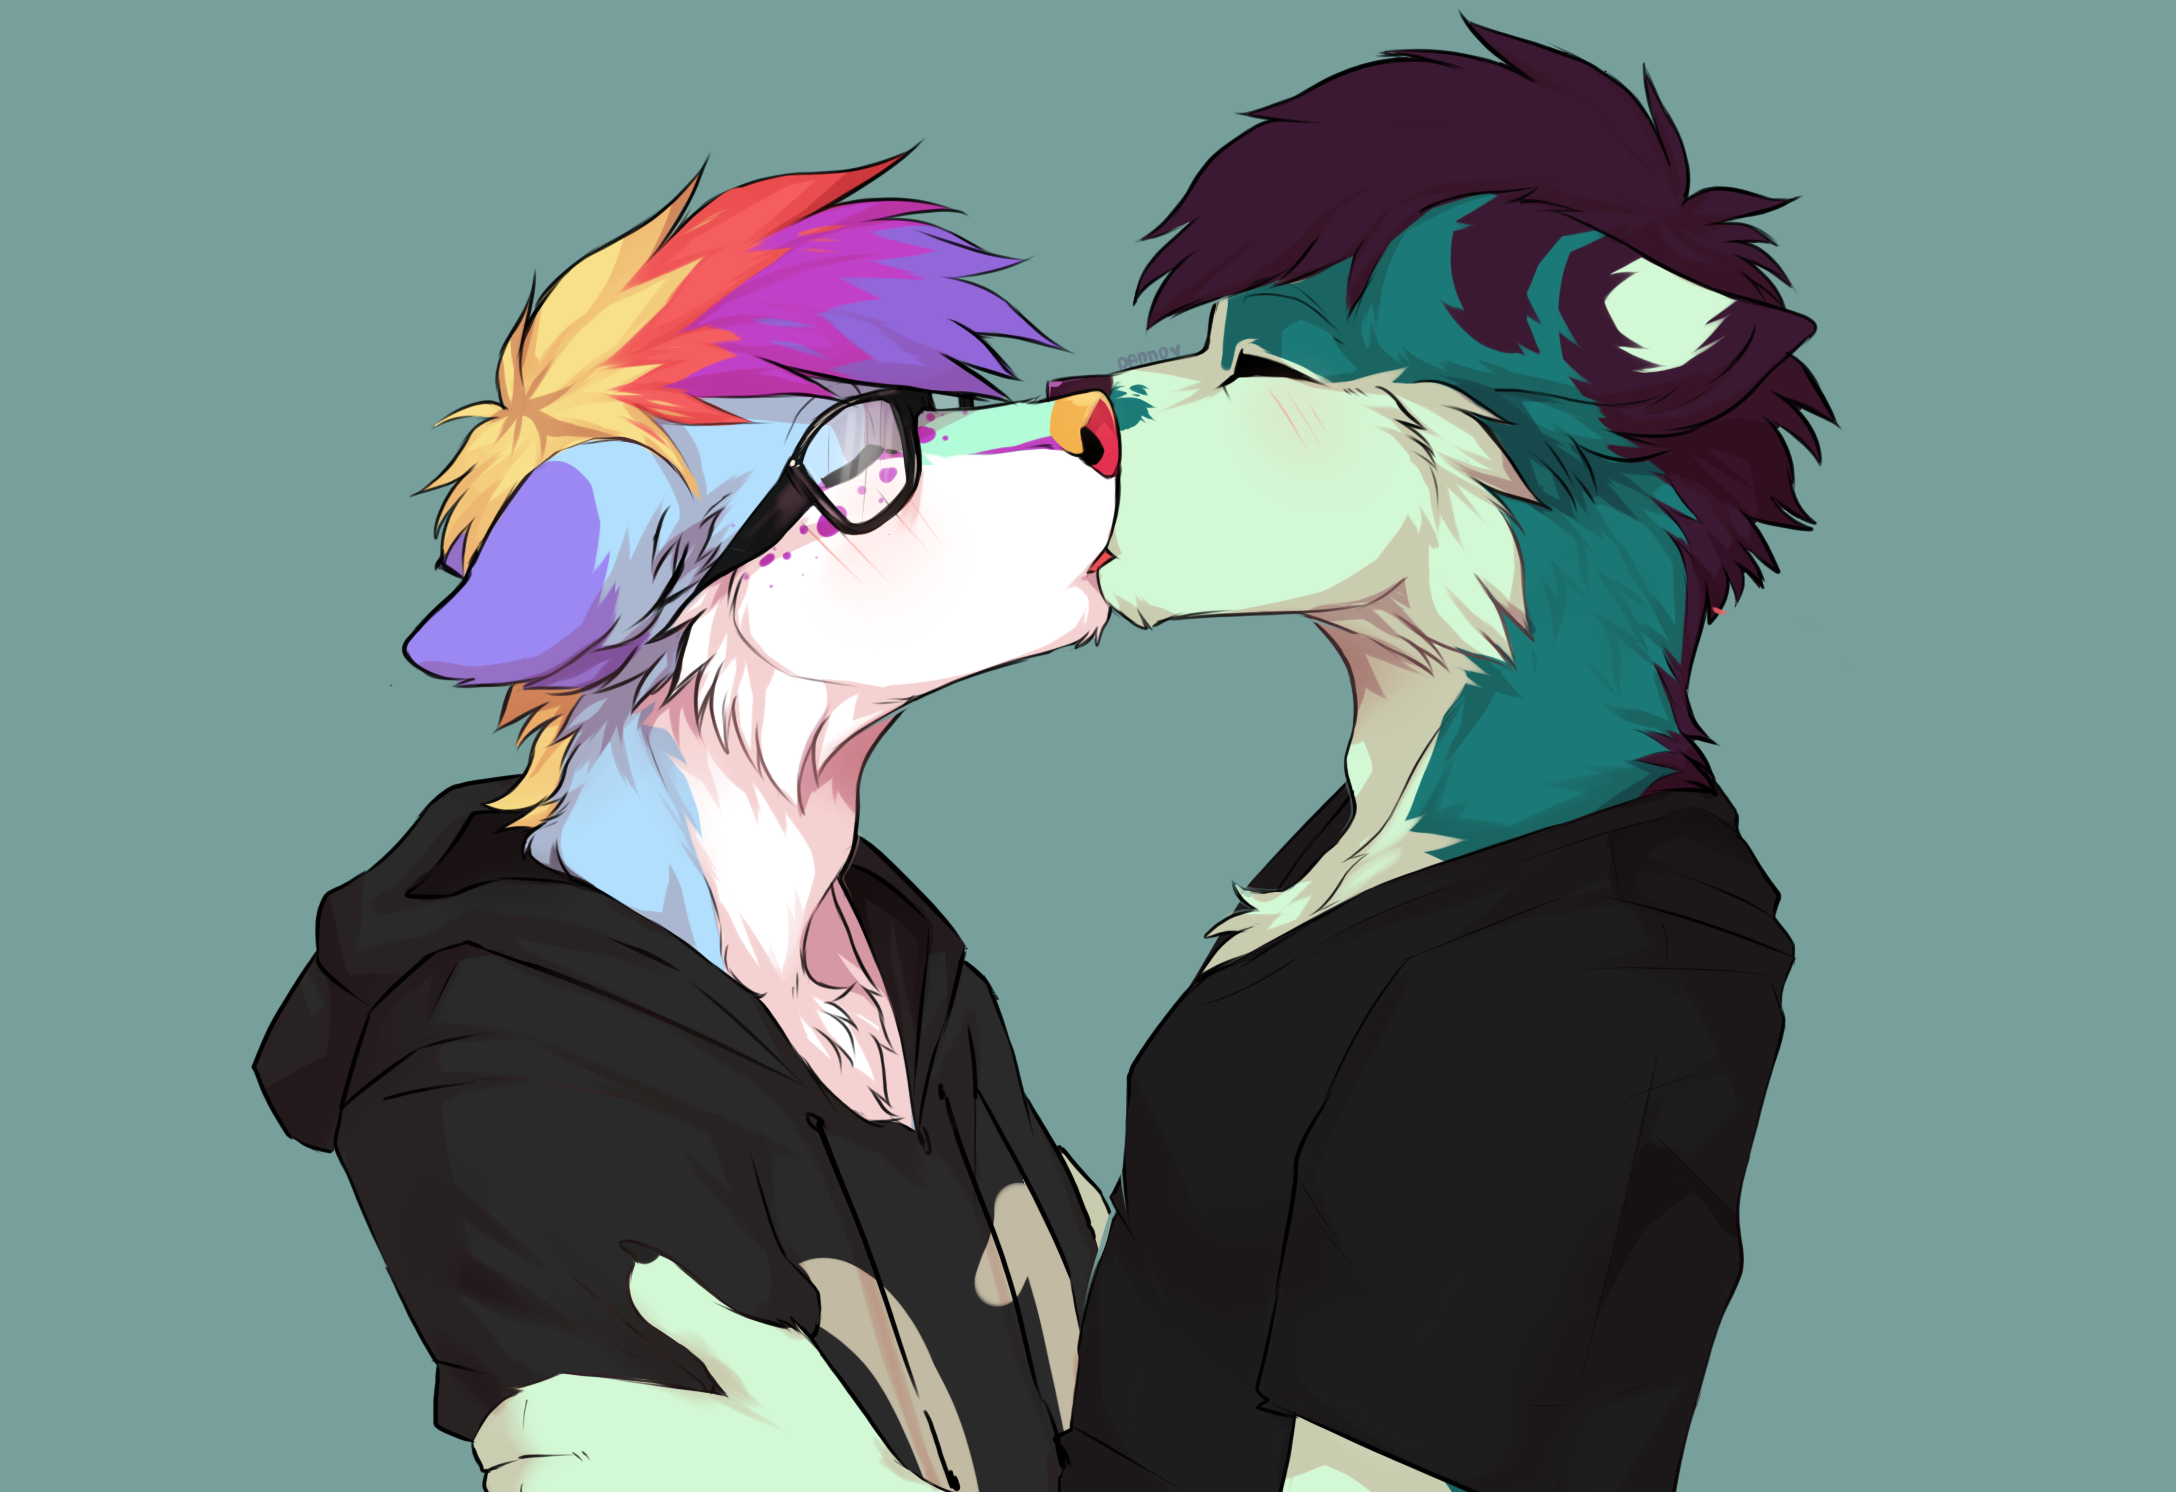 Furry kiss